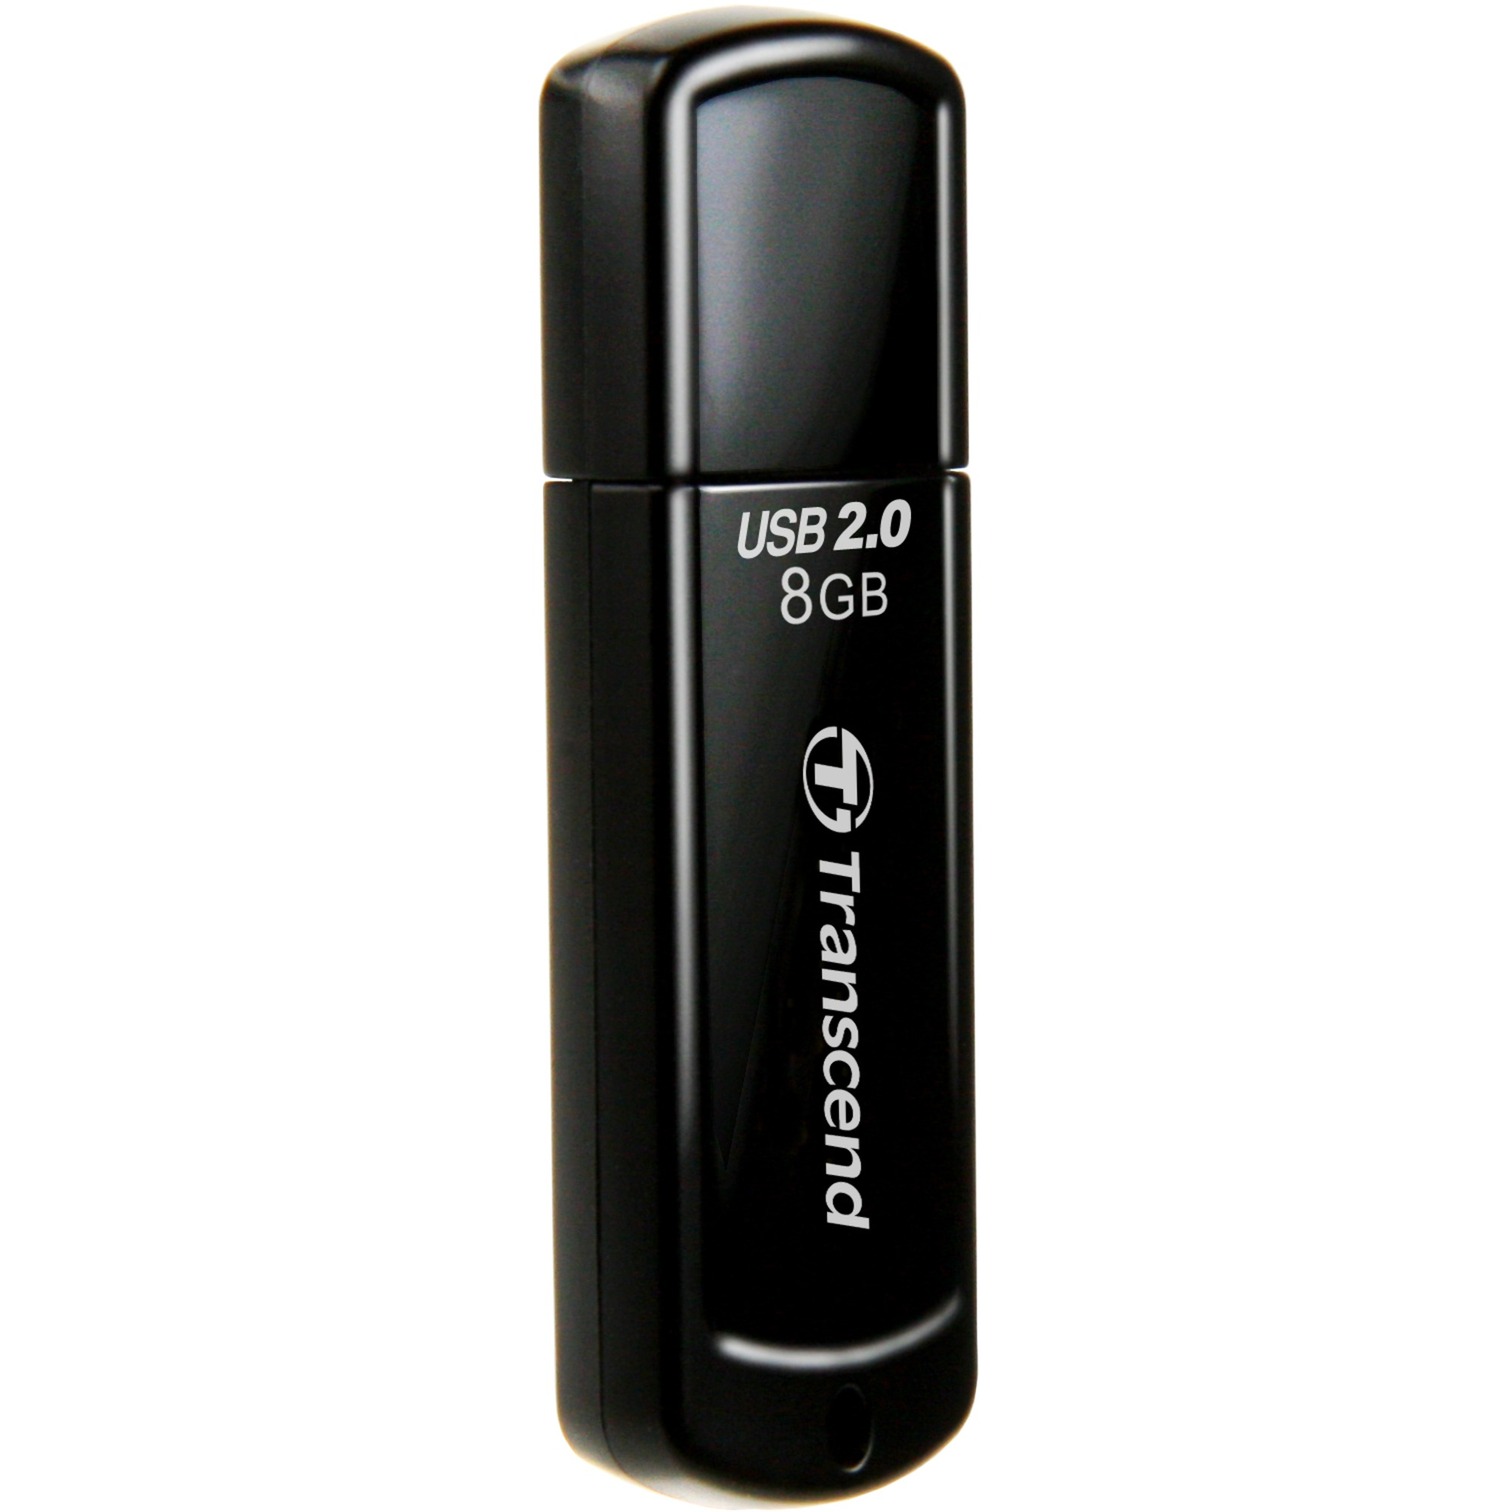 Image of Alternate - JetFlash 350 8GB, USB-Stick online einkaufen bei Alternate